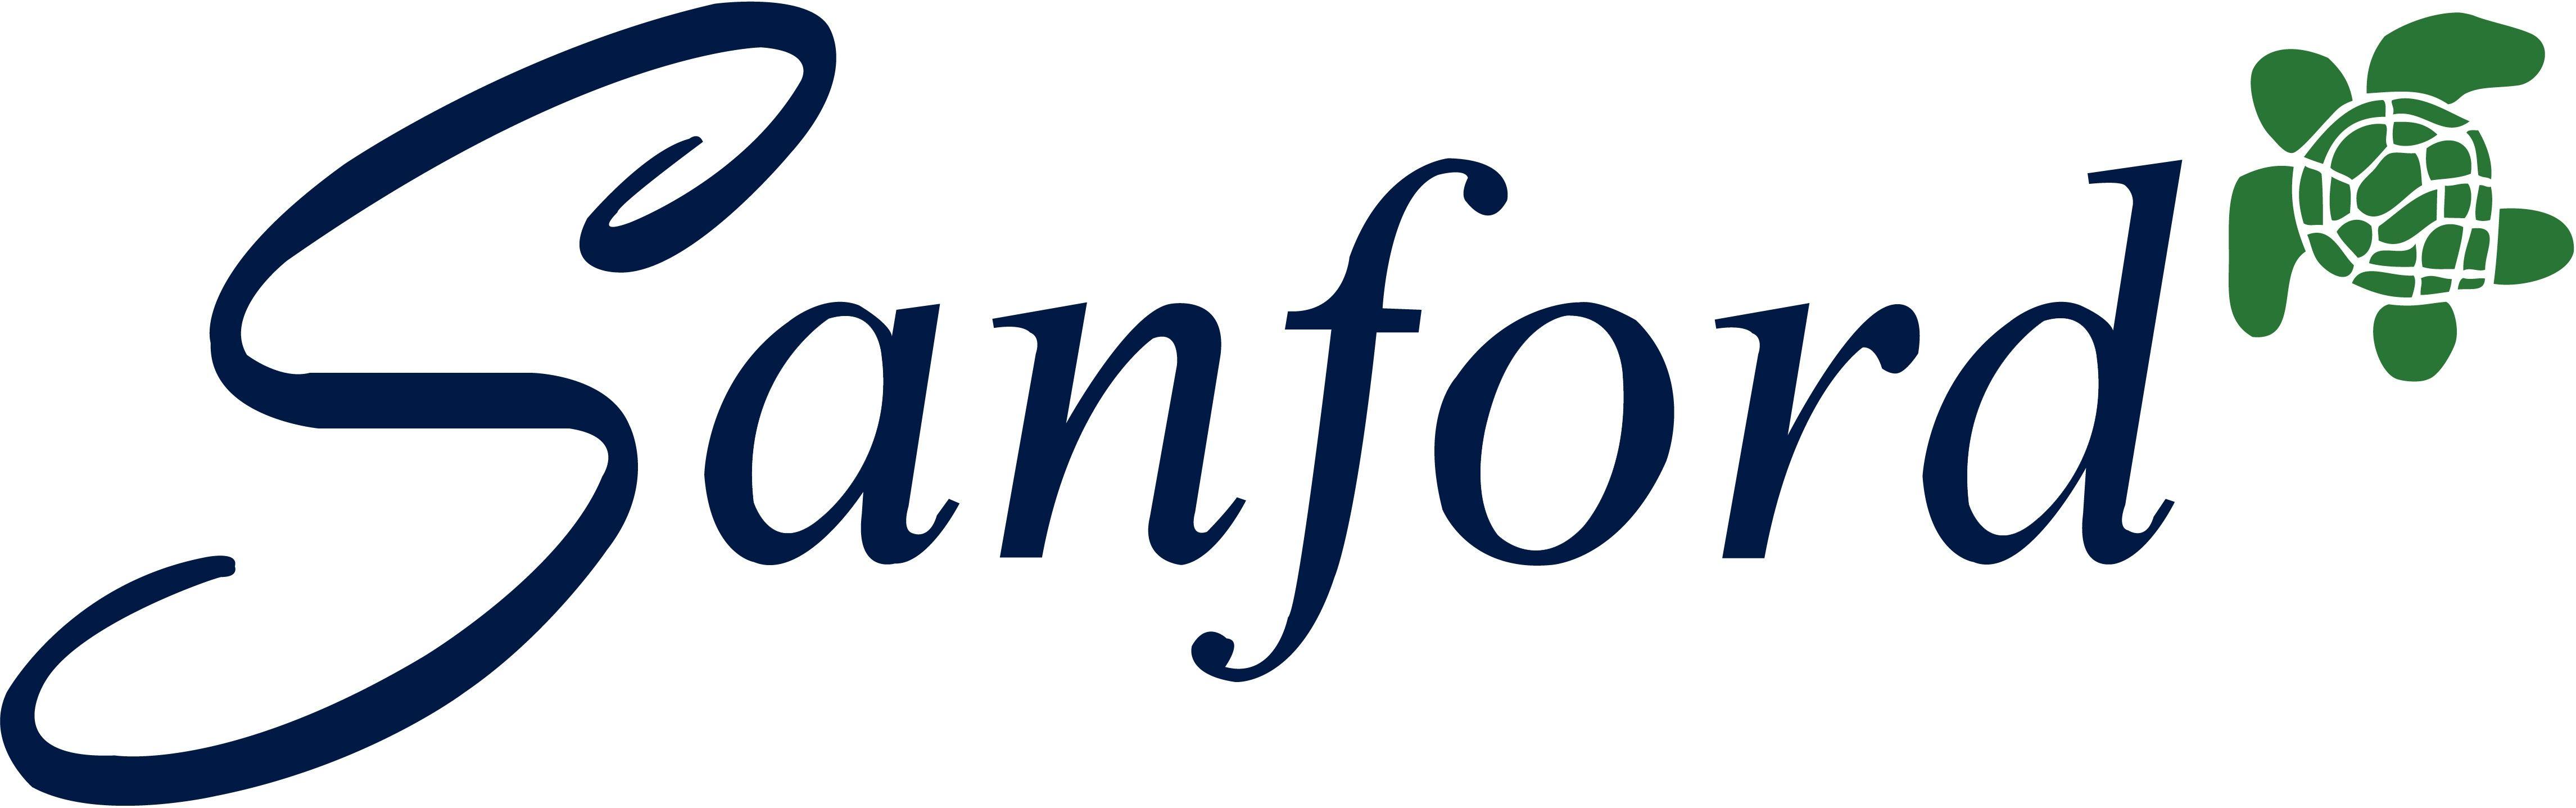 Sanford Logo - Sanford Logo Mobile Dentistry